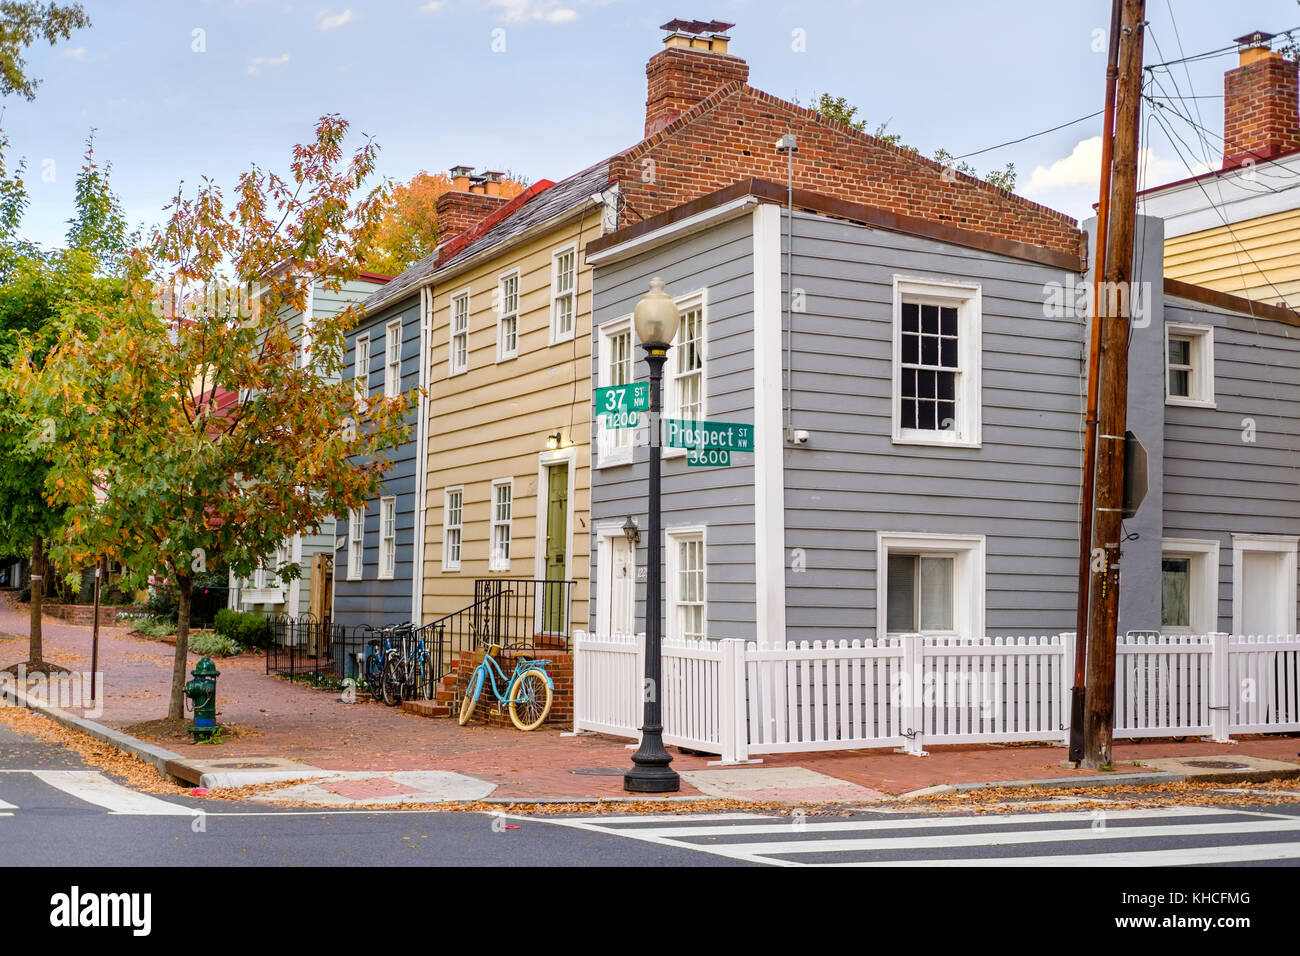 Street View di stile cape cod case all'angolo di prospettiva St NW e 37 St NW nello storico quartiere di Georgetown, Washington D.C., USA. Foto Stock